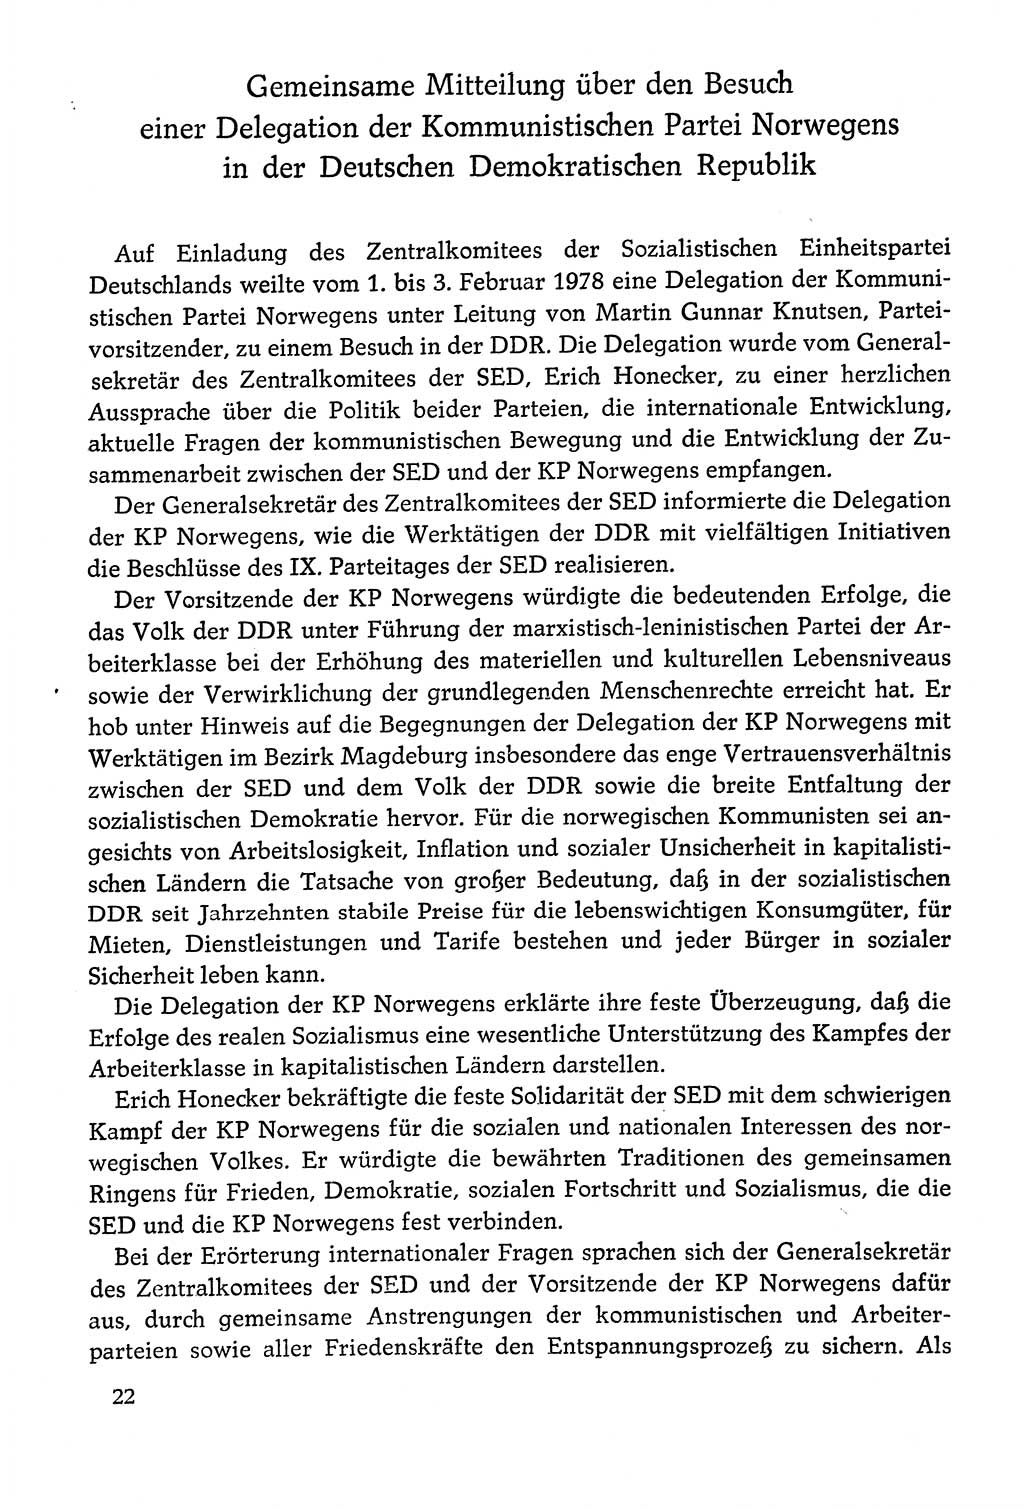 Dokumente der Sozialistischen Einheitspartei Deutschlands (SED) [Deutsche Demokratische Republik (DDR)] 1978-1979, Seite 22 (Dok. SED DDR 1978-1979, S. 22)